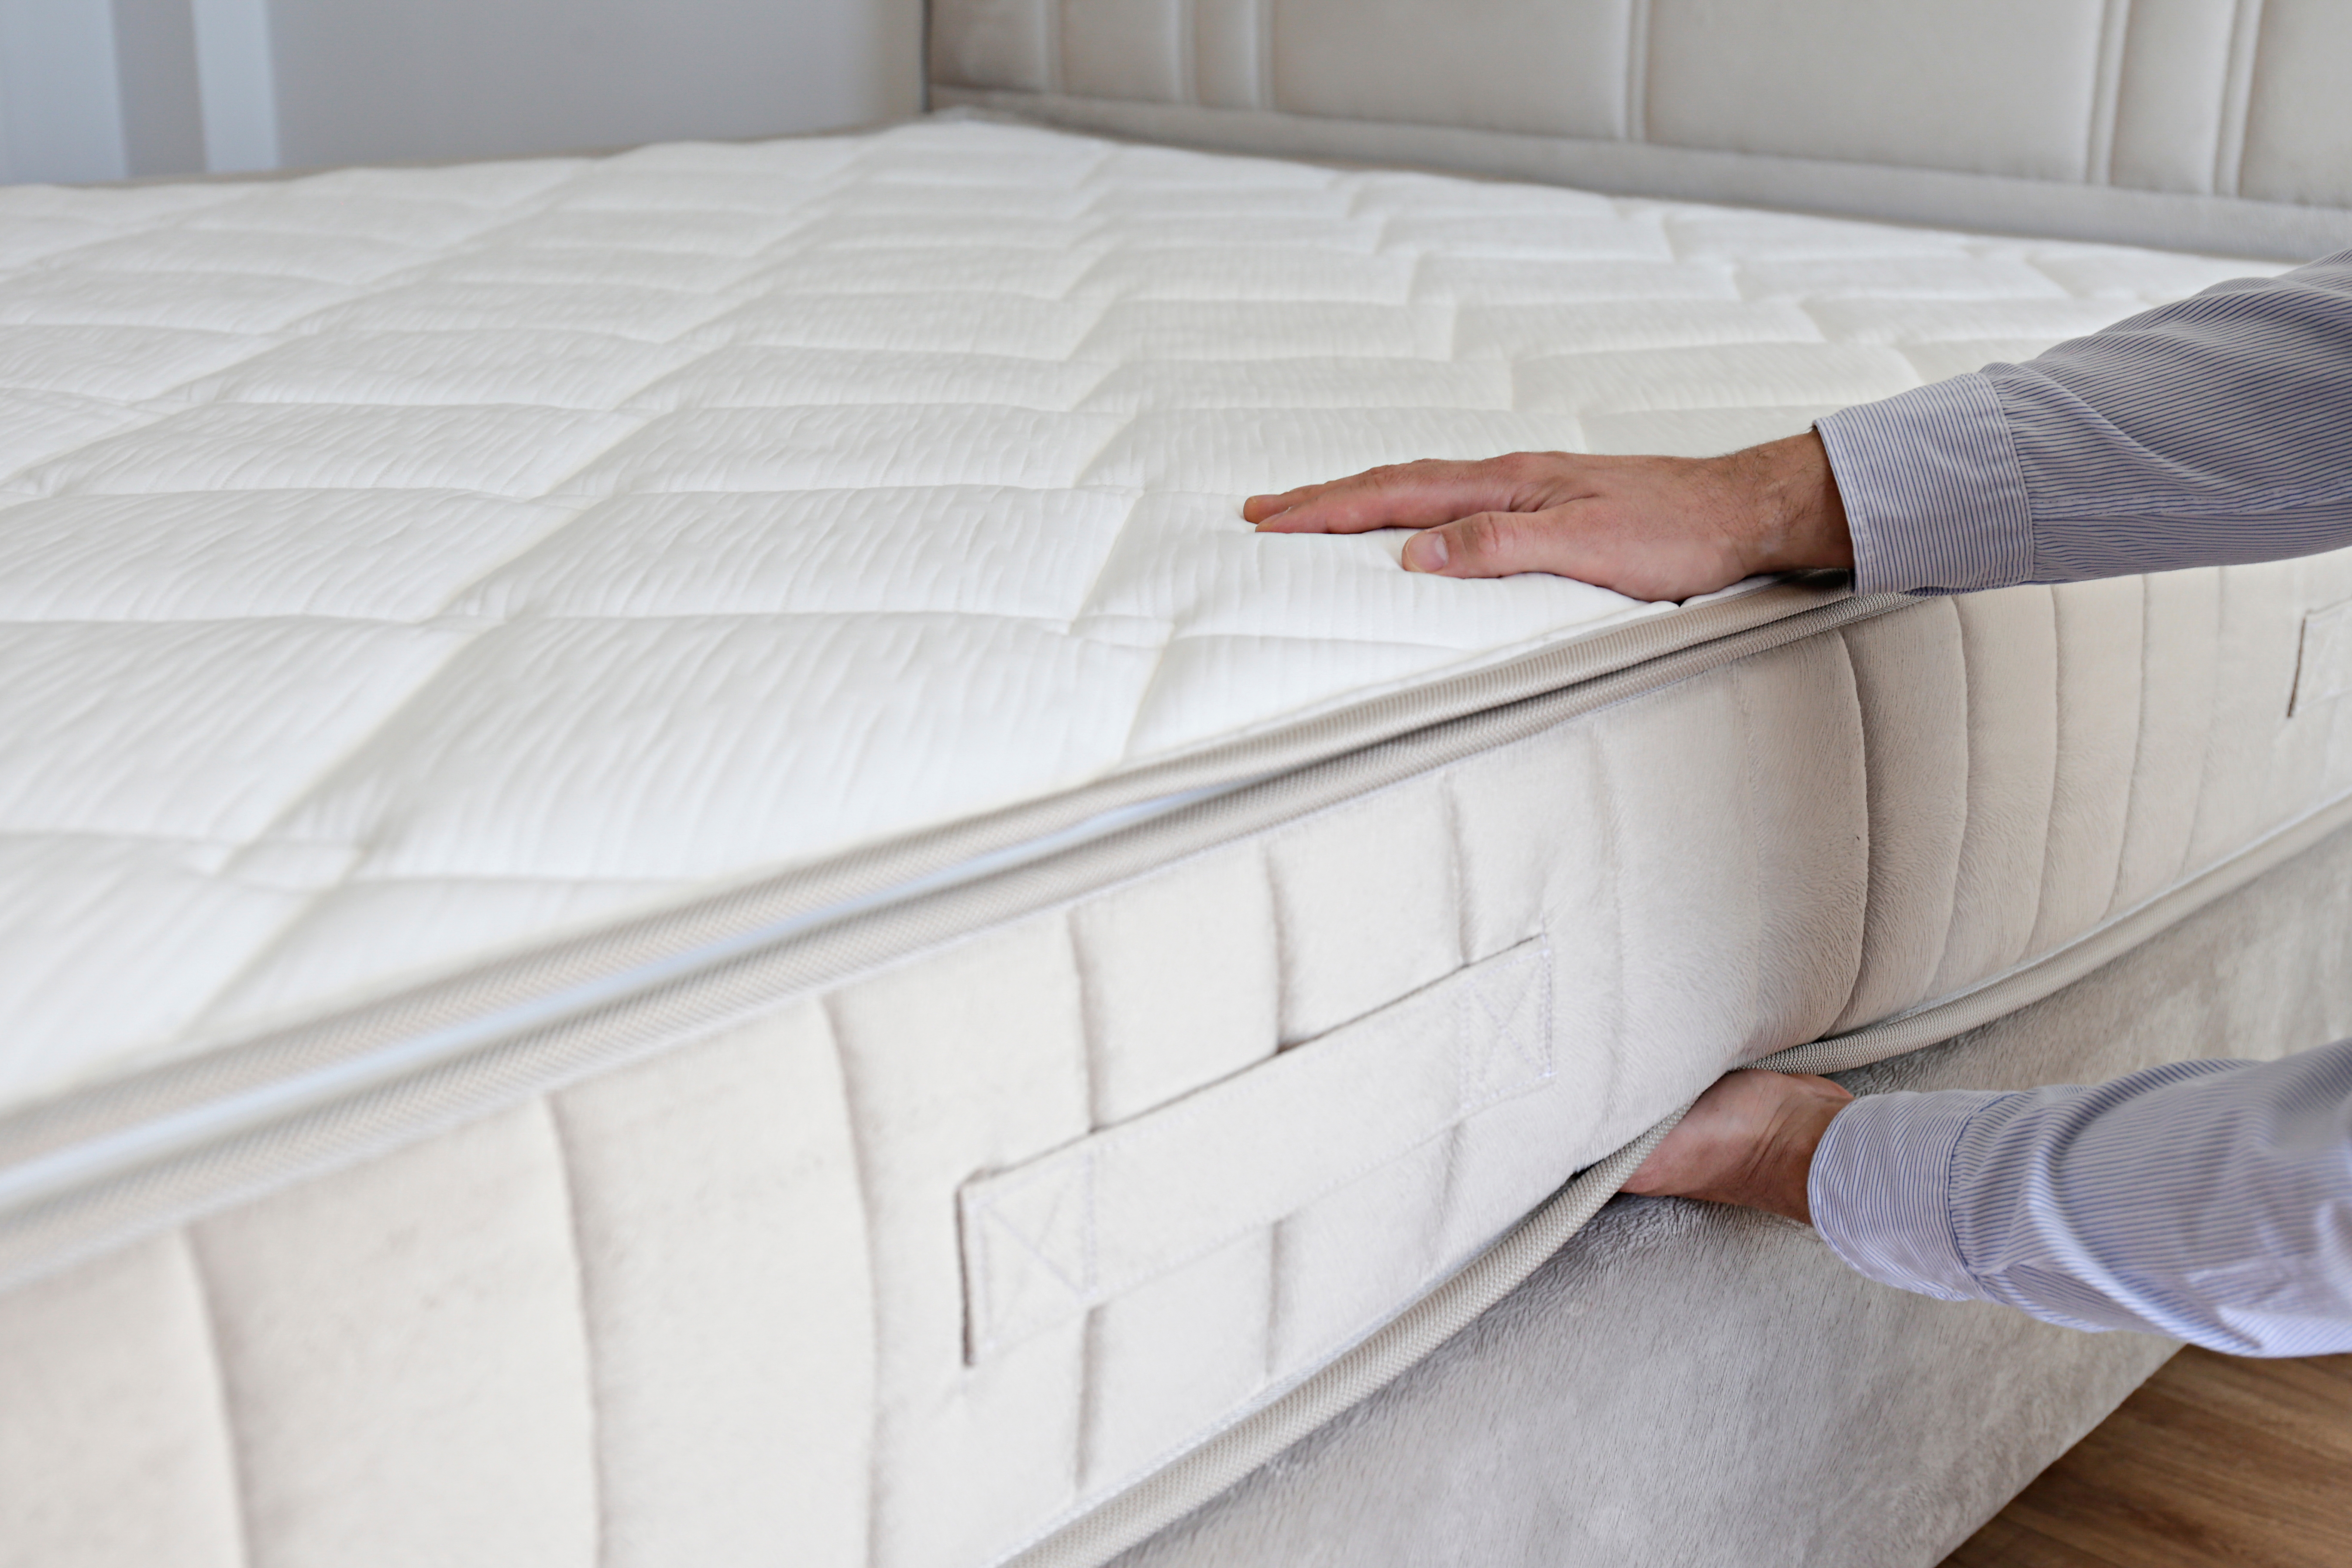 Man testing a mattress | Source: Shutterstock